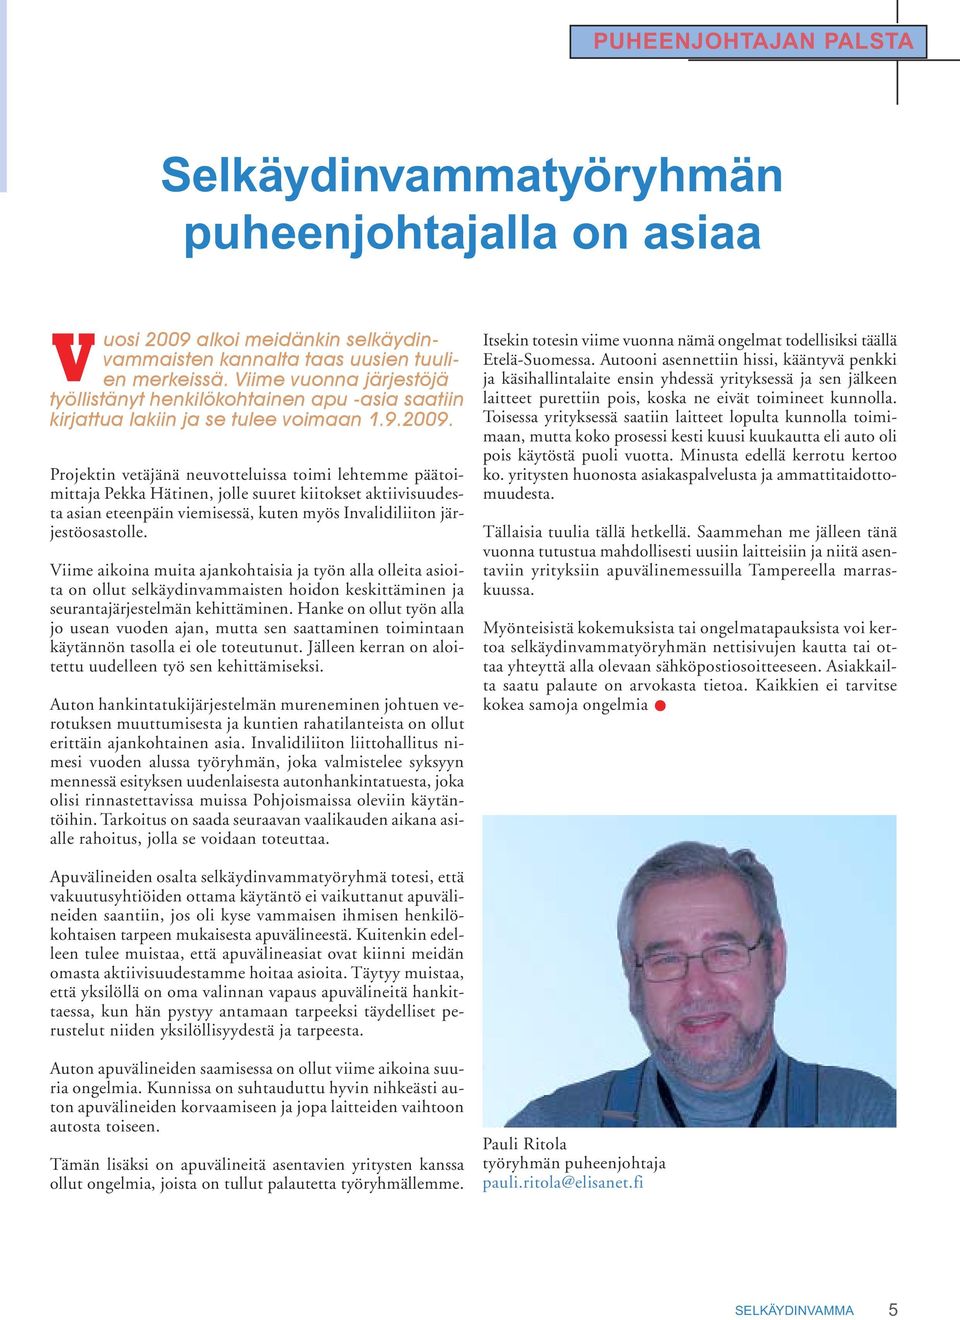 Projektin vetäjänä neuvotteluissa toimi lehtemme päätoimittaja Pekka Hätinen, jolle suuret kiitokset aktiivisuudesta asian eteenpäin viemisessä, kuten myös Invalidiliiton järjestöosastolle.